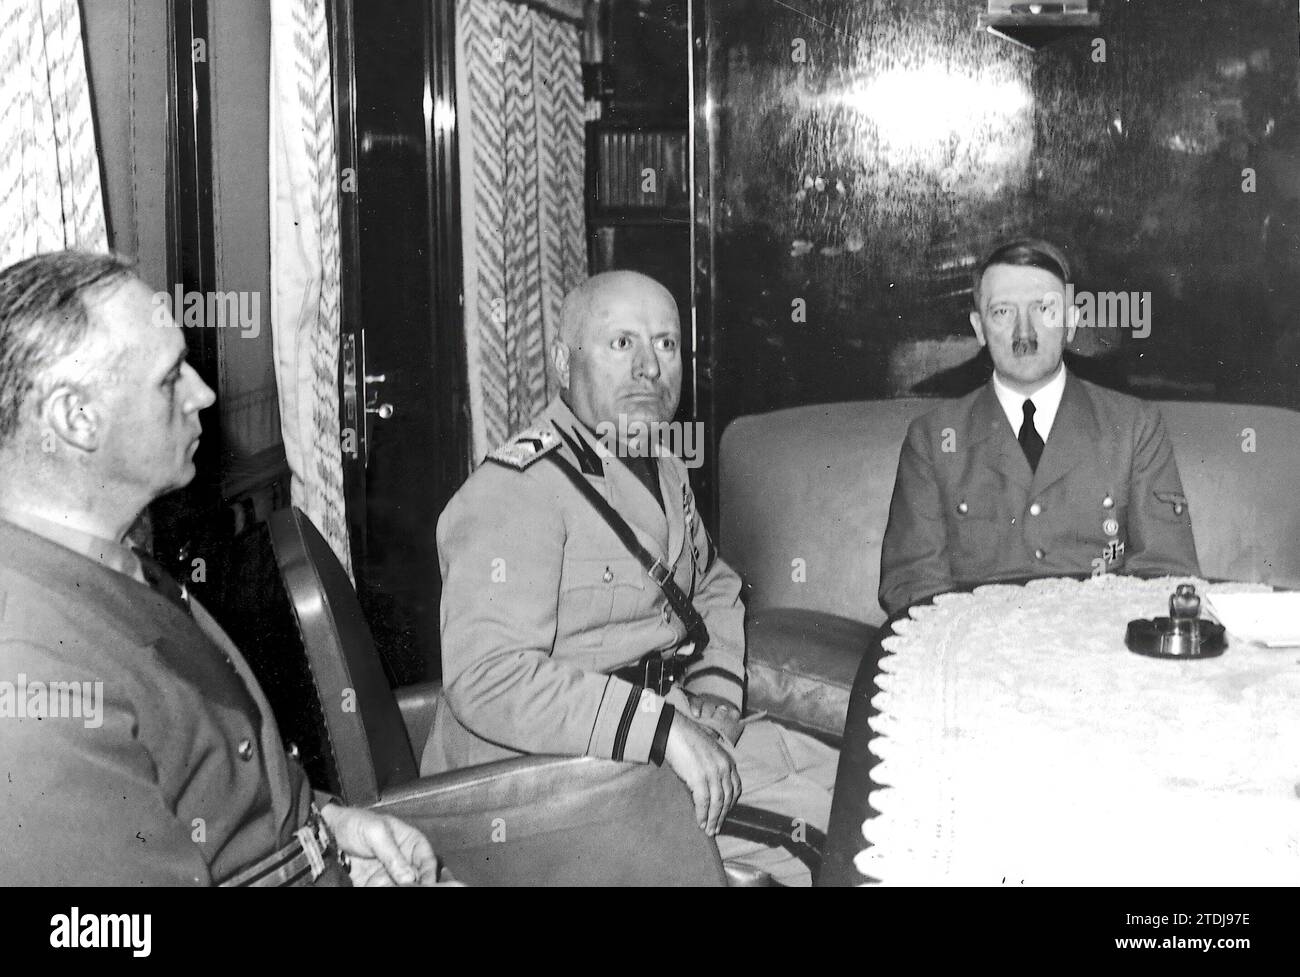 Brenner. 10/04/1940. Hitler e Mussolini durante i colloqui al Brennero. A destra il ministro degli Esteri tedesco Von Ribbentrop. Crediti: Album / Archivo ABC / Heinrich Hoffmann Foto Stock